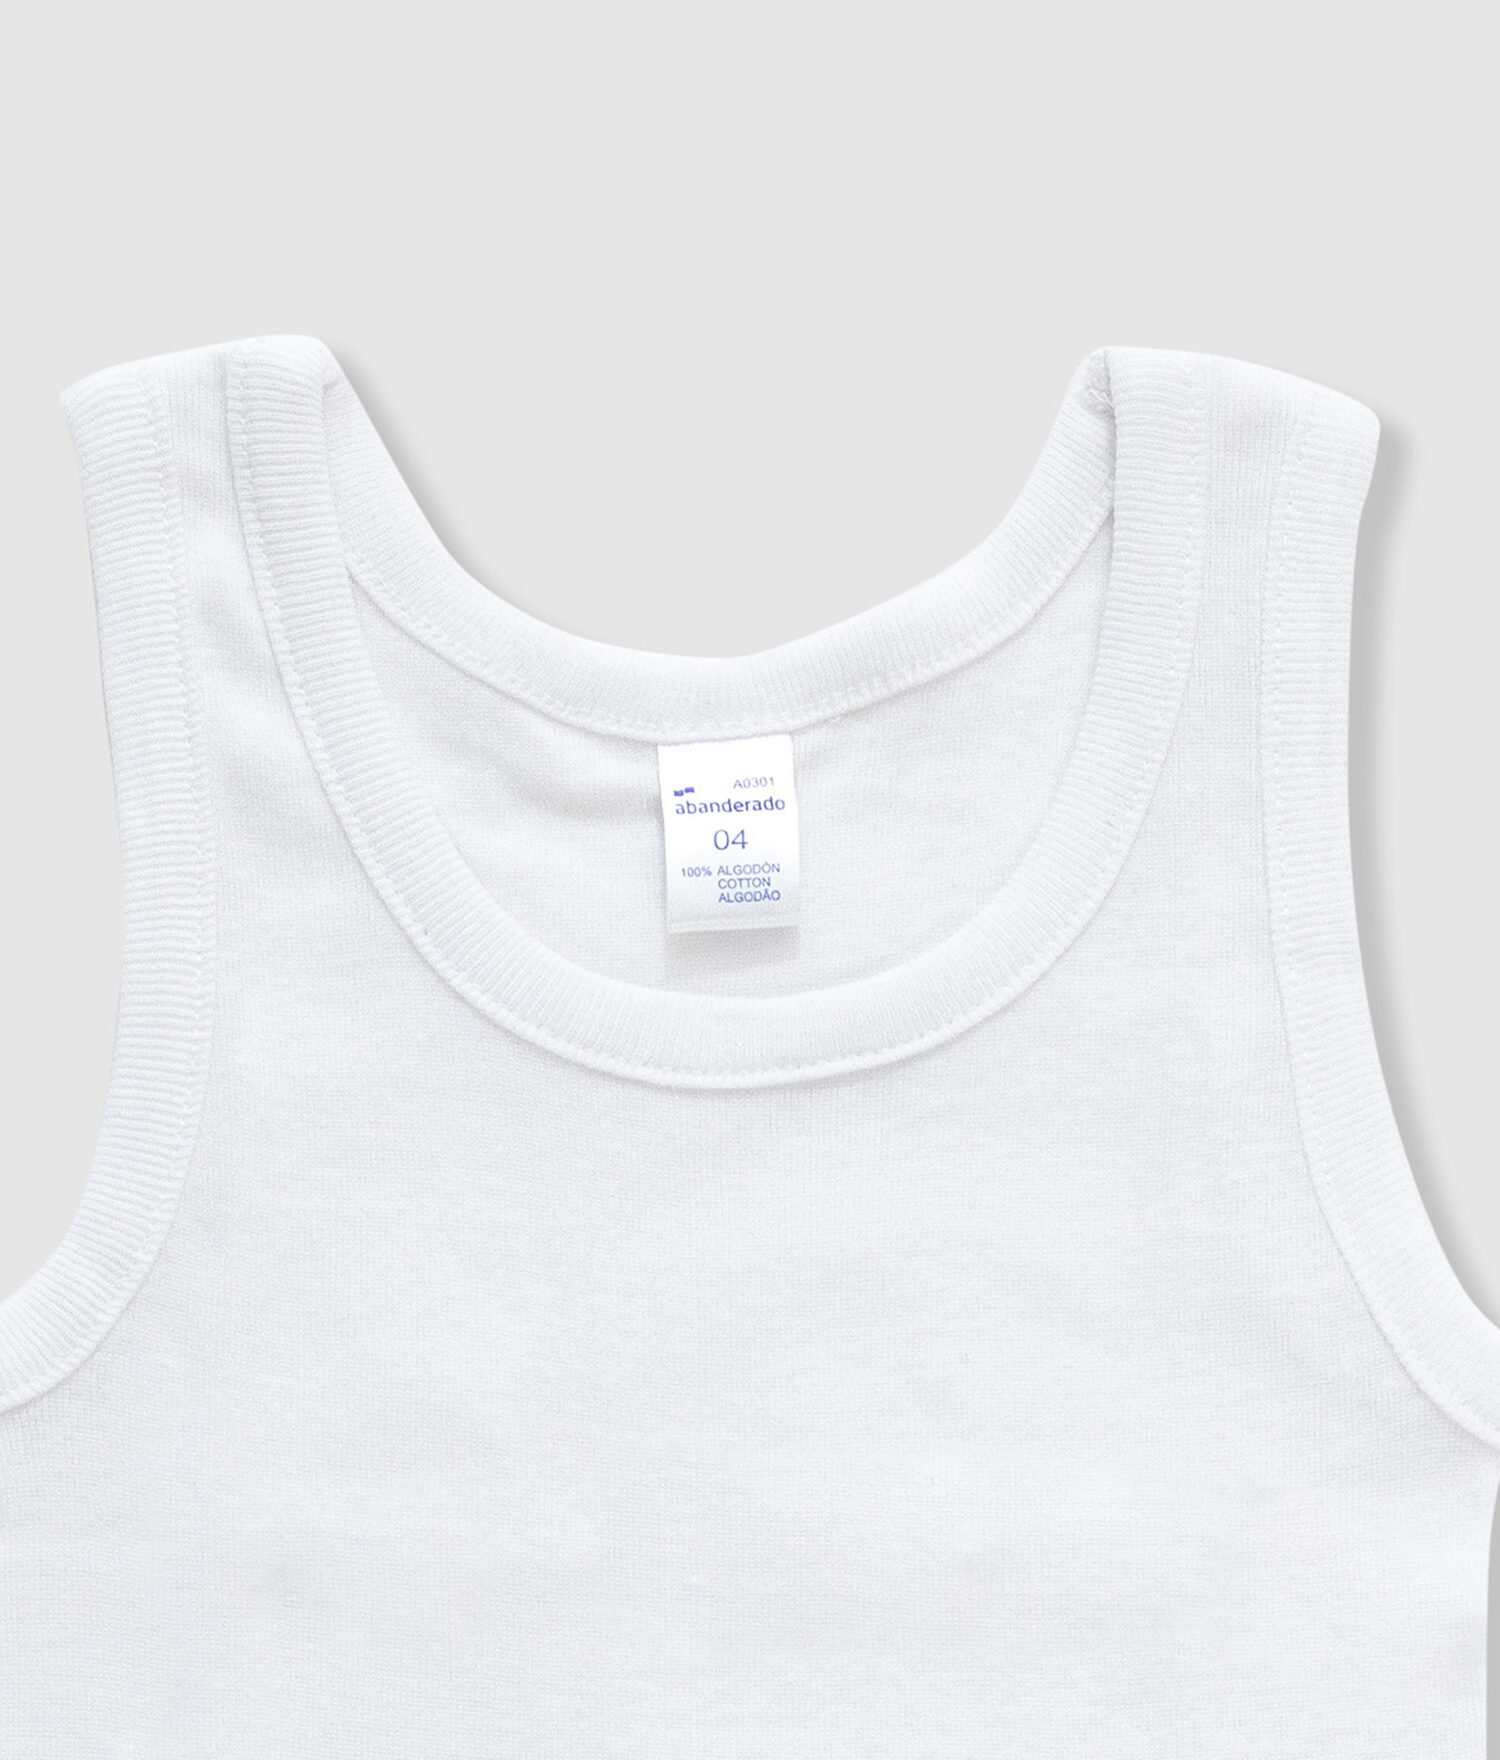 Abanderado AS00257, Junior Algodón Camiseta Térmica para Niños